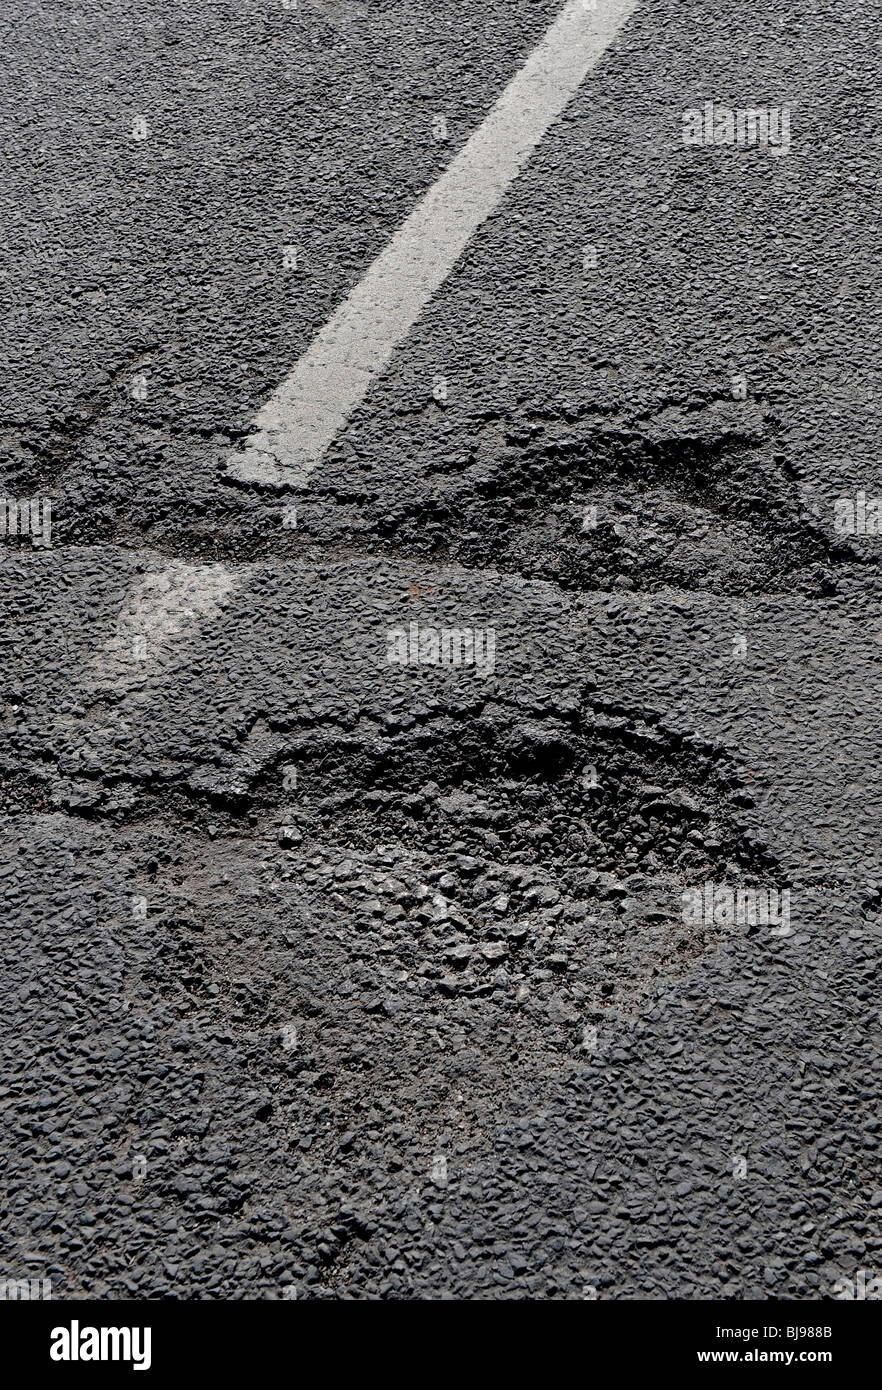 Potholes on UK roads Stock Photo